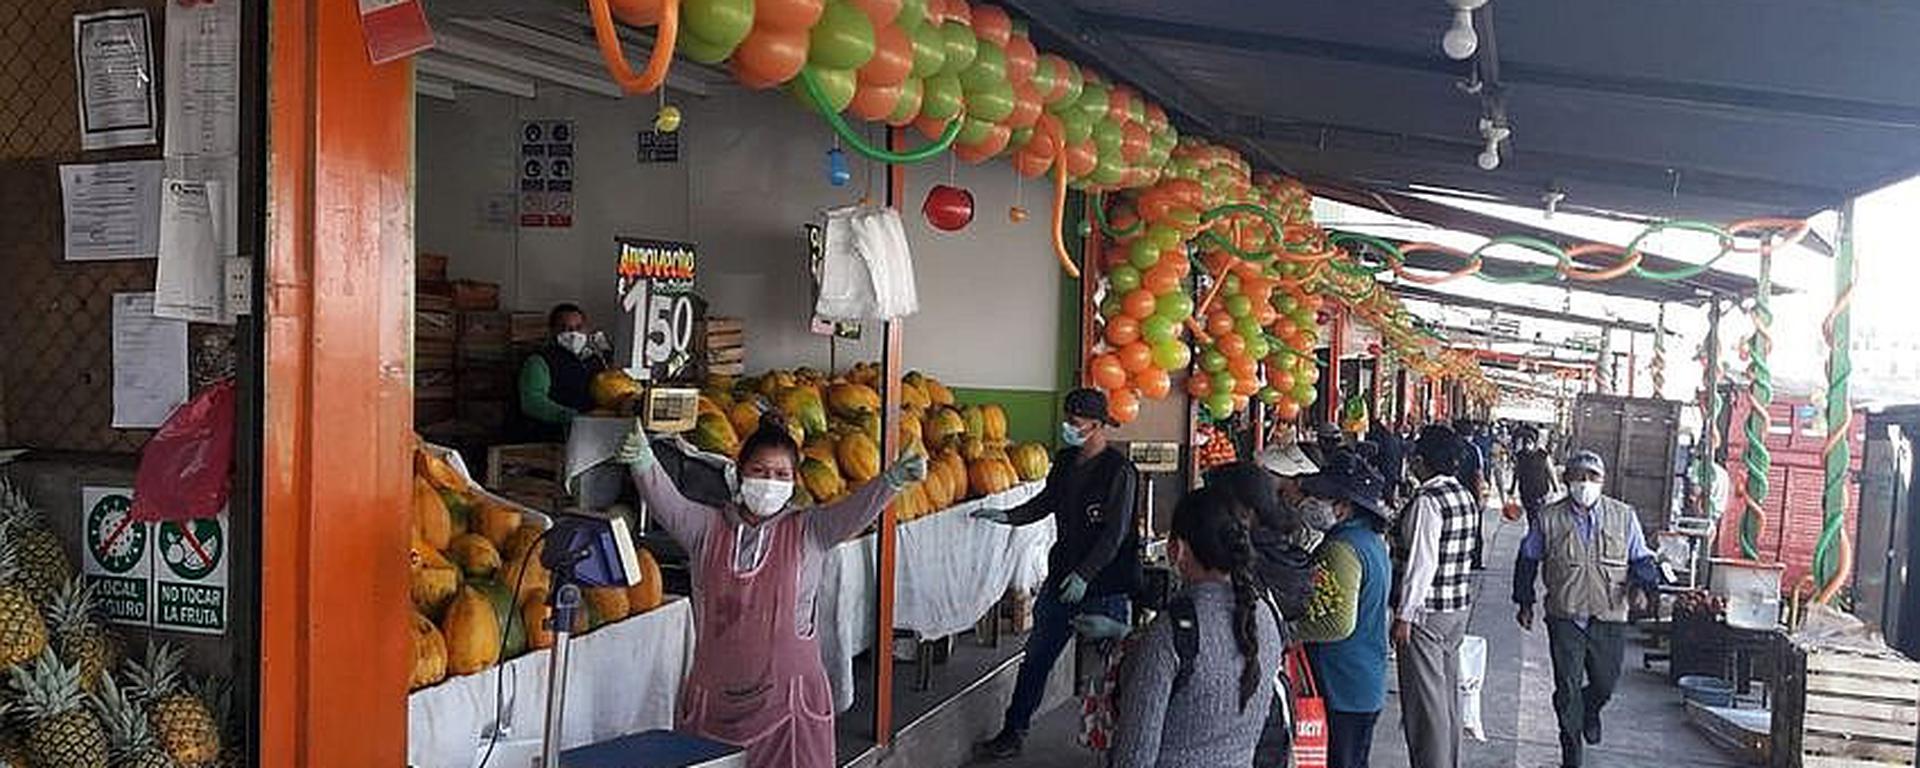 Precios de alimentos suben hasta S/2,50 en mercados minoristas del sur